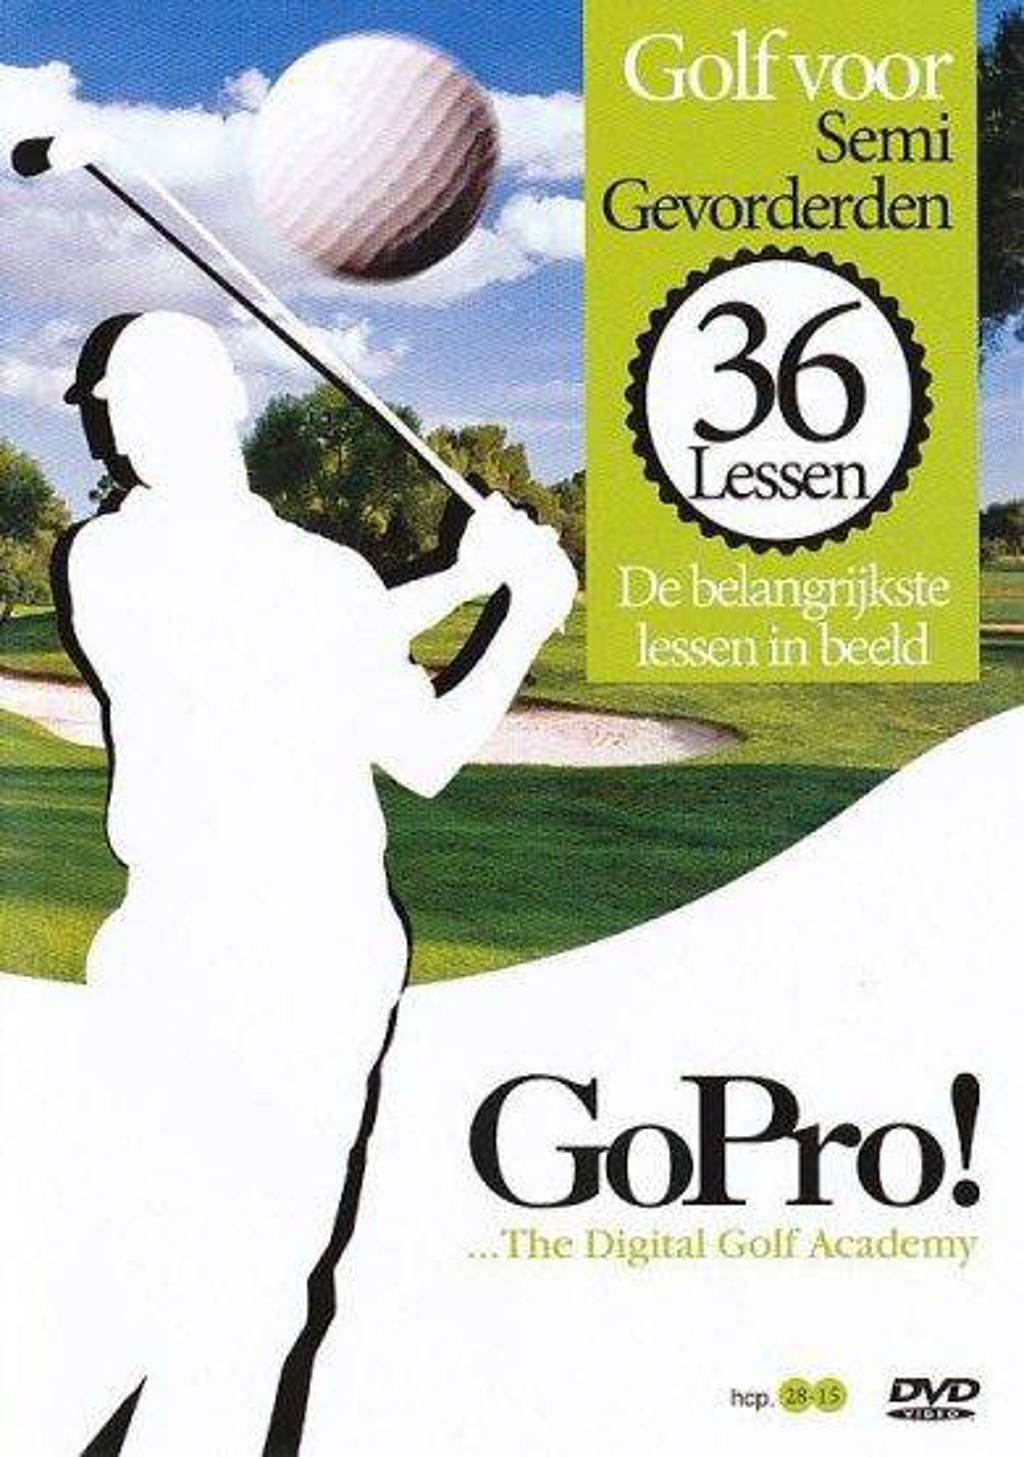 Gopro - De 36 Belangrijkste Golflessen In Beeld Semi - Gevorderden (DVD)